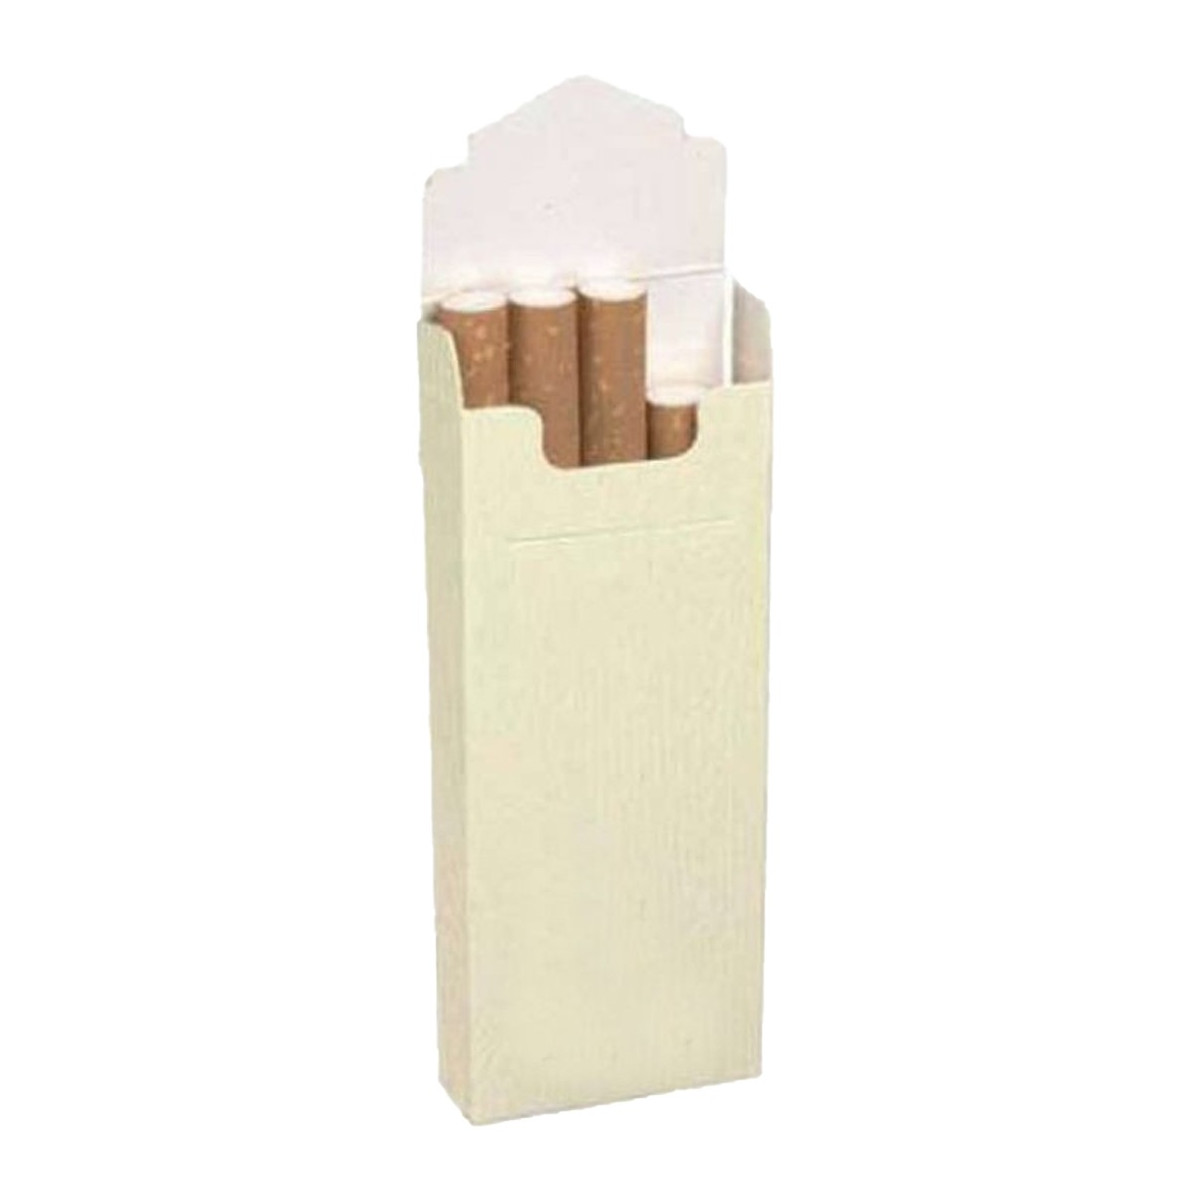 Pacotes de tabaco para os hóspedes